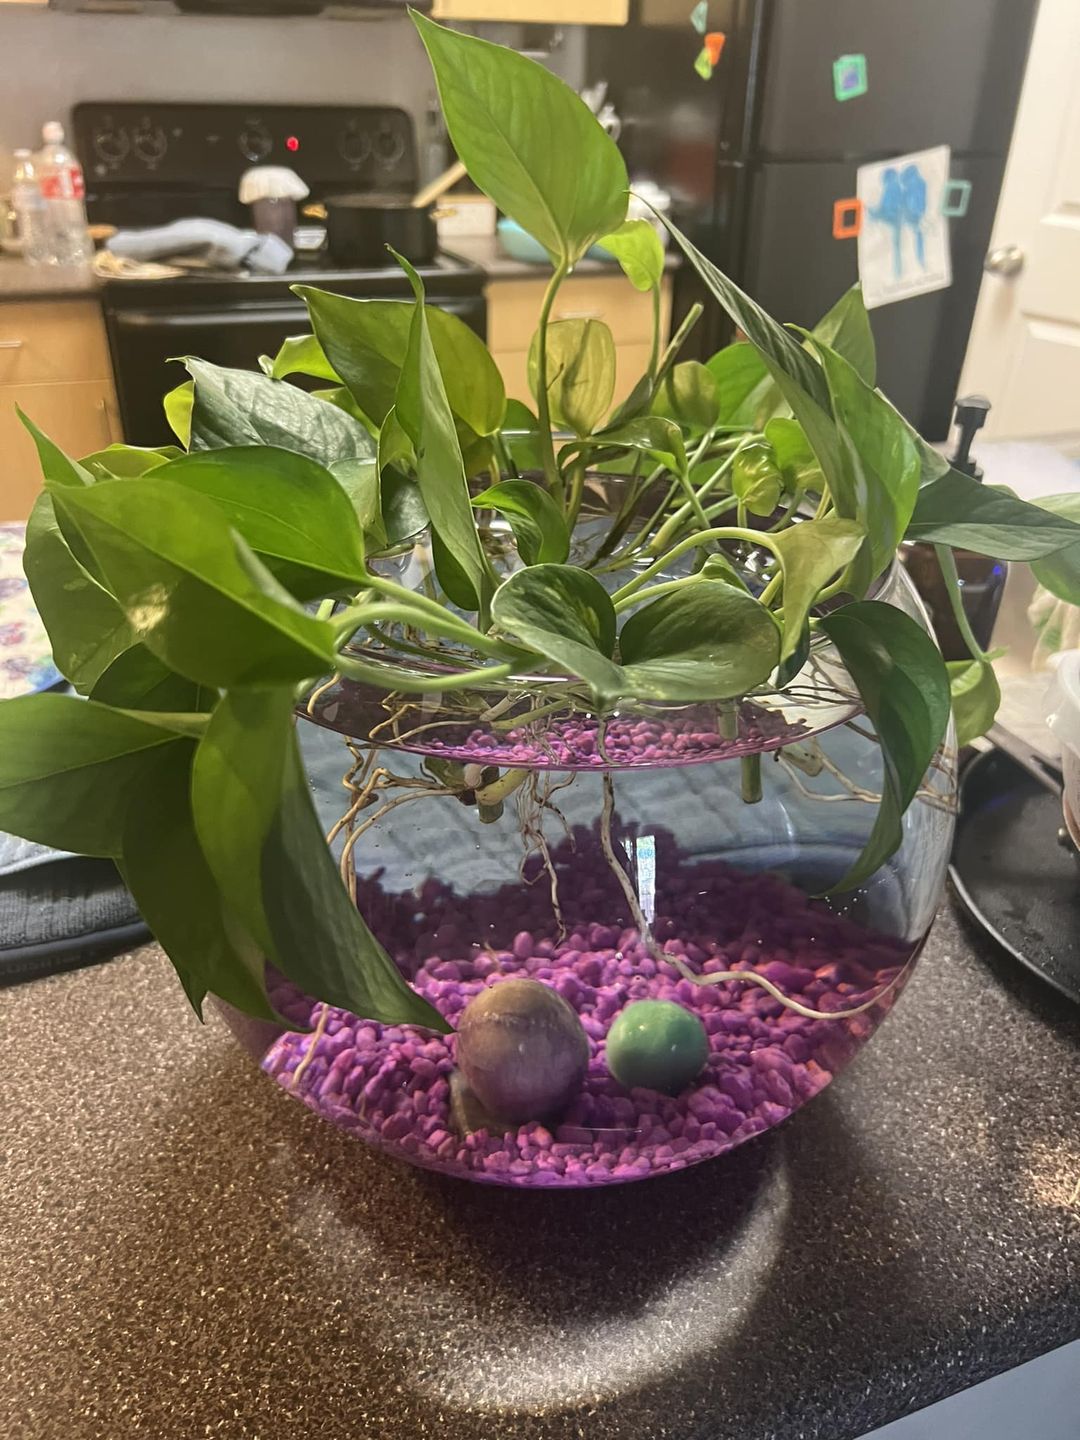 Plants That Grow In Water Indoor